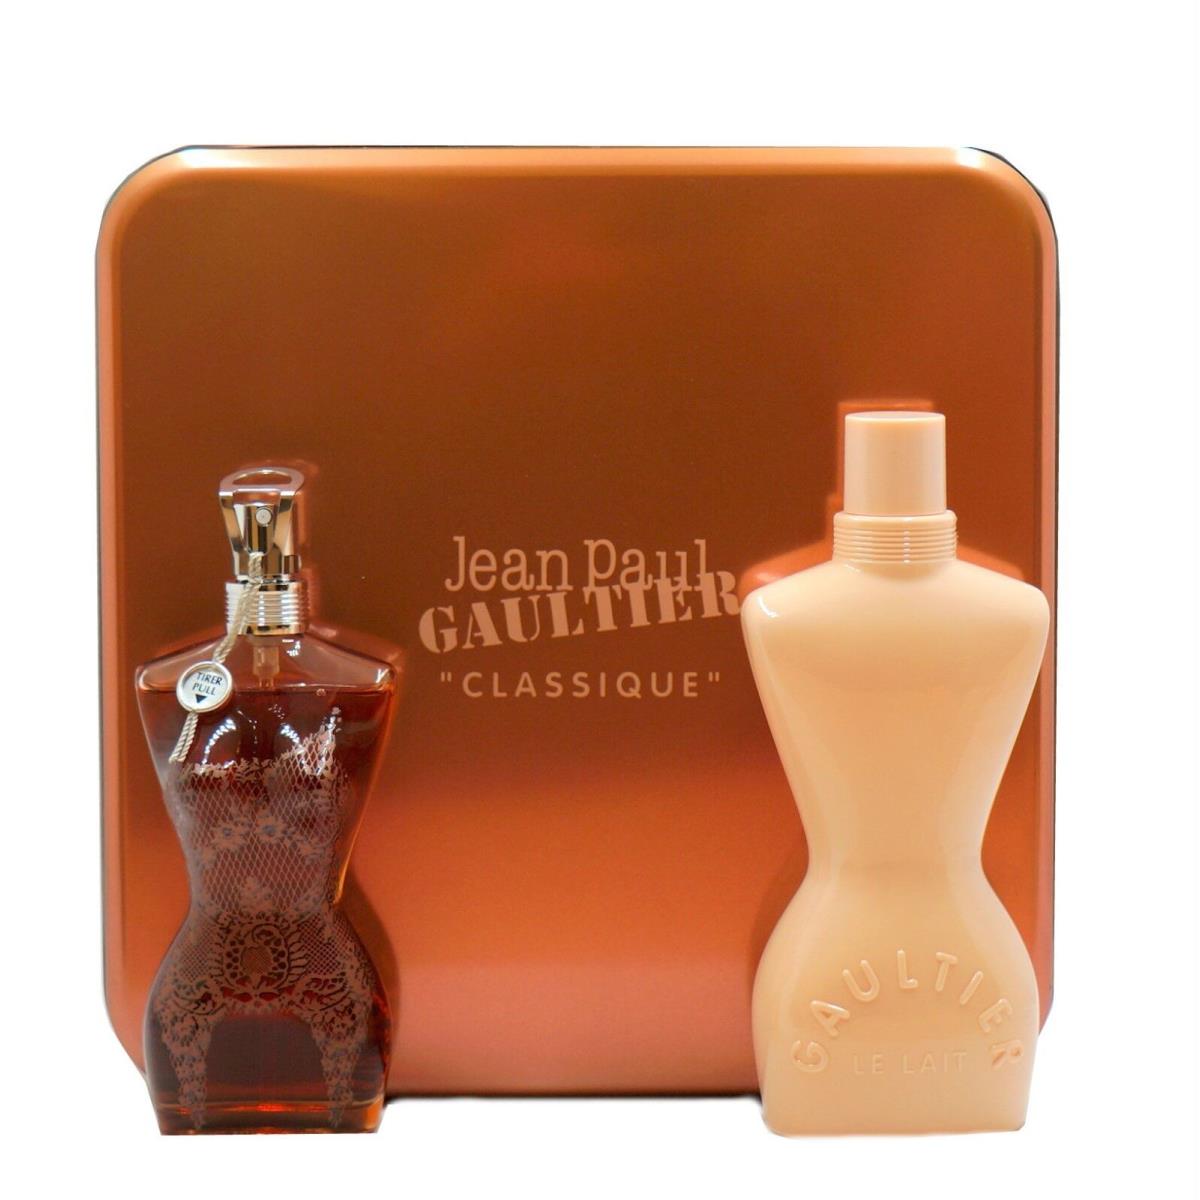 Jean Paul Gaultier Classique 2PC Gift Set with Eau DE Parfum Spray 50ML